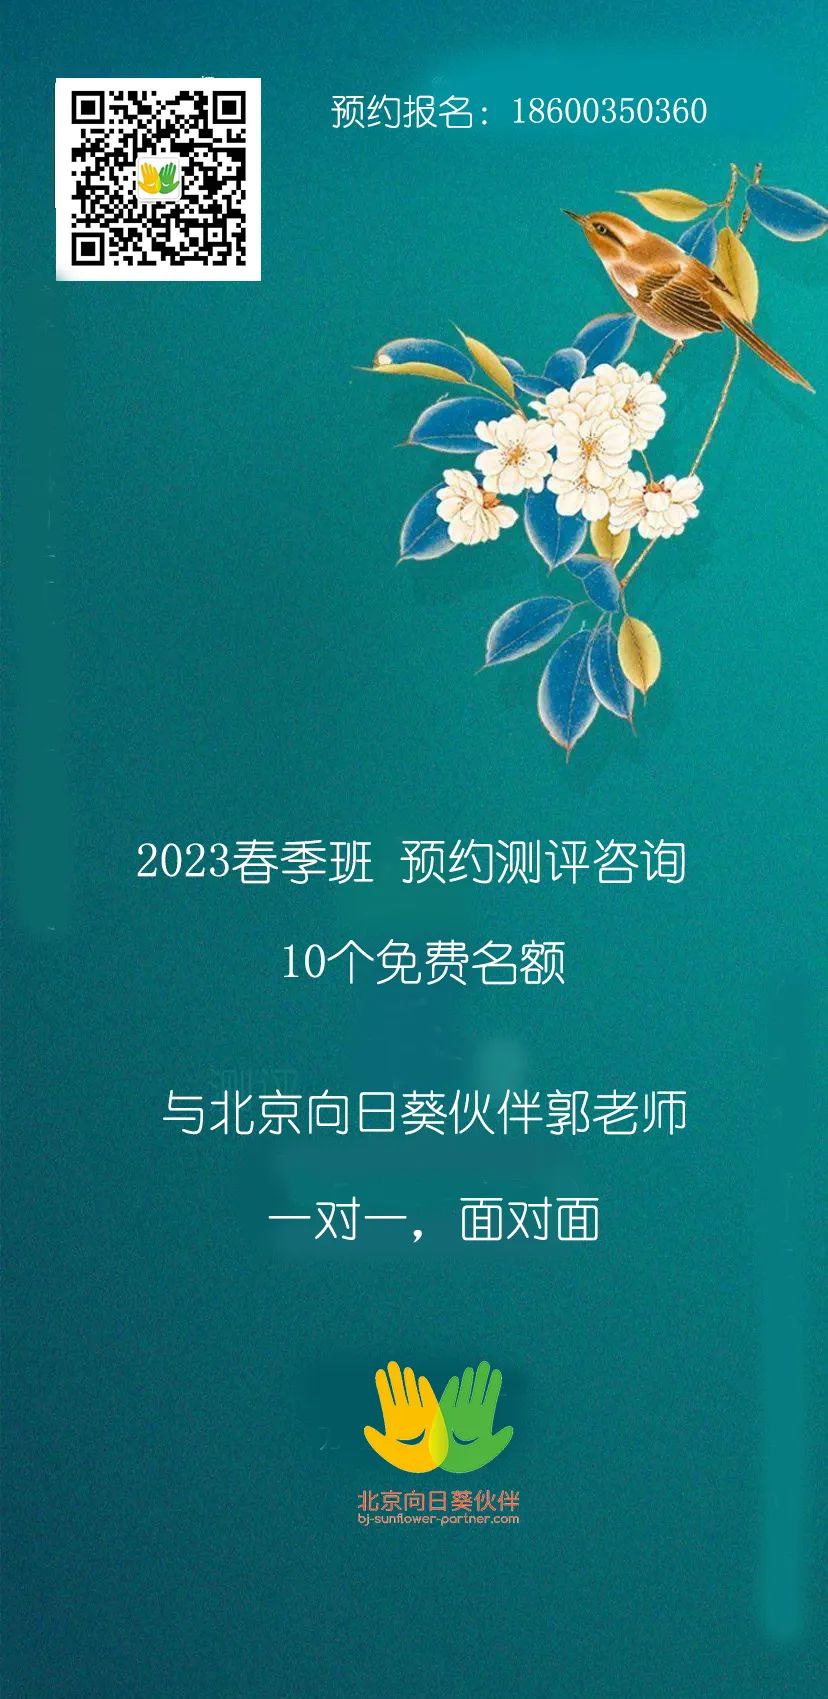 北京向日葵伙伴2023春季班预约测评免费咨询